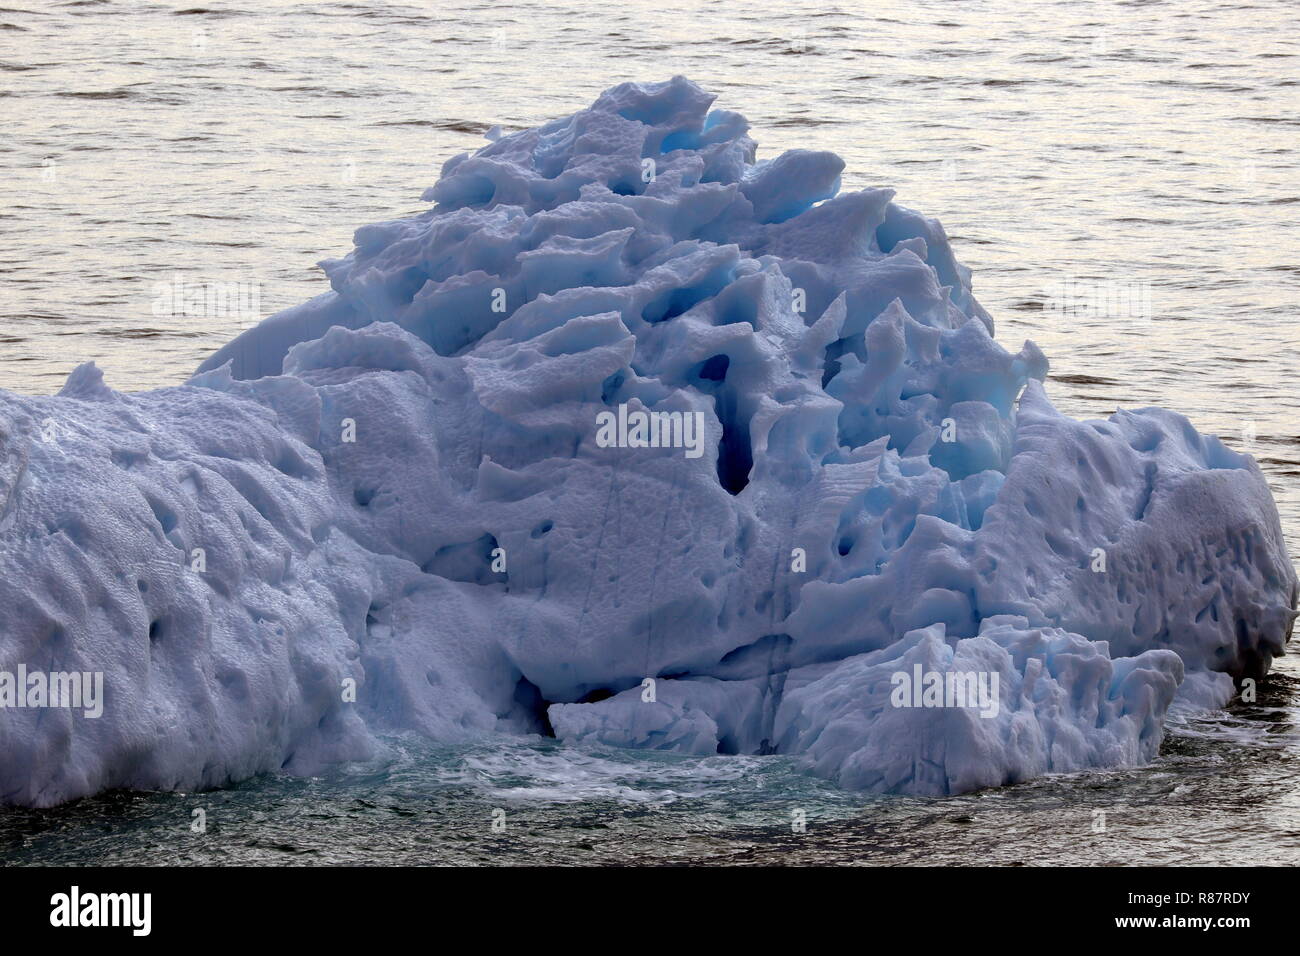 Grönland Disko Bucht: In diesen Eisberg haben Sonne und Wind schon ein paar Löcher gebohrt. Stock Photo